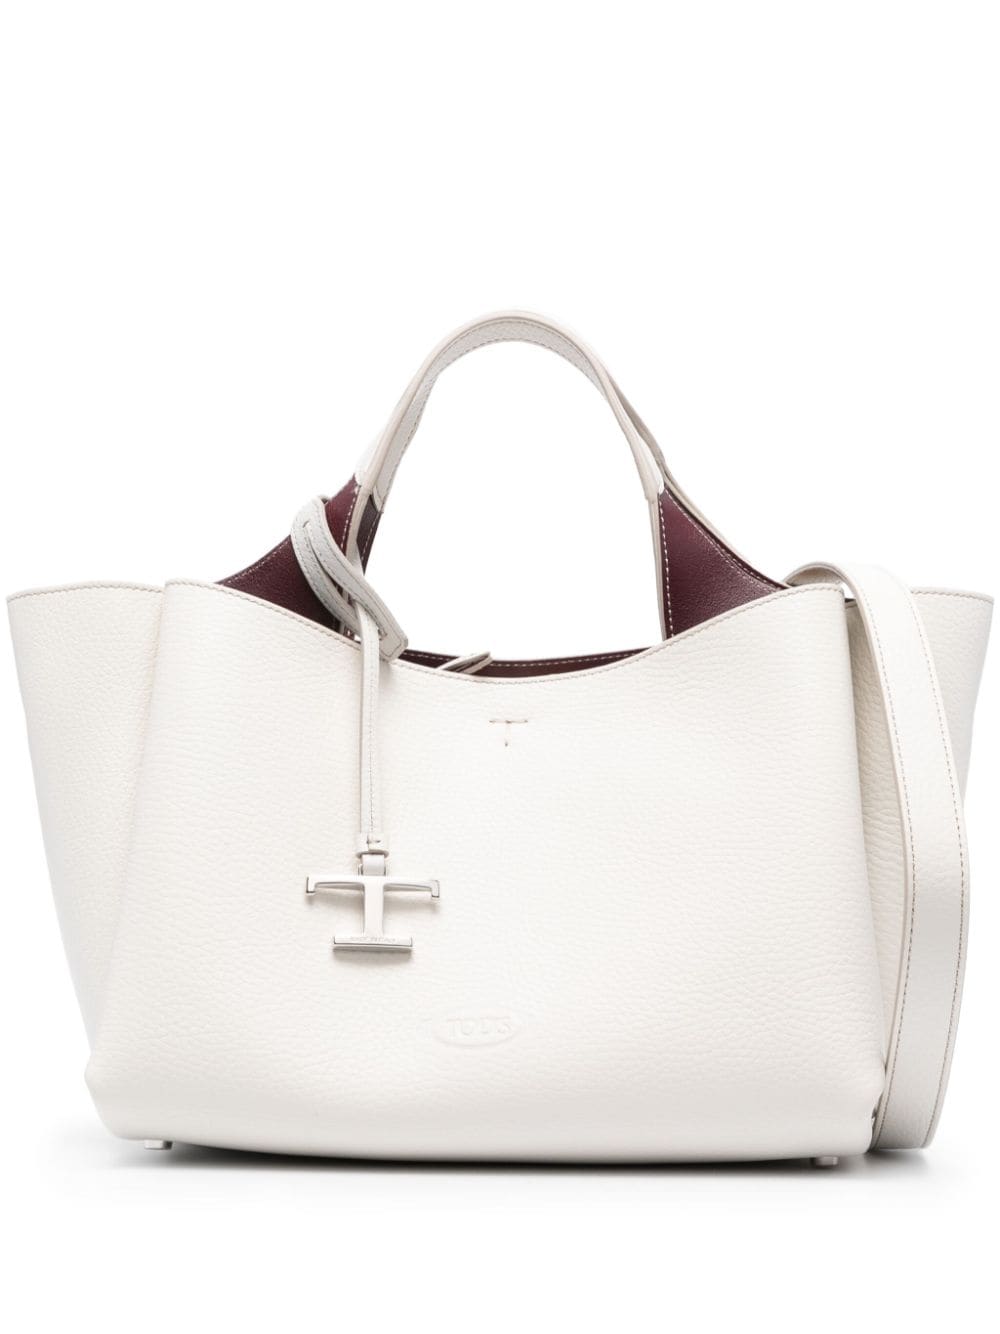 TOD'S Timeless White Tote Handbag for Women